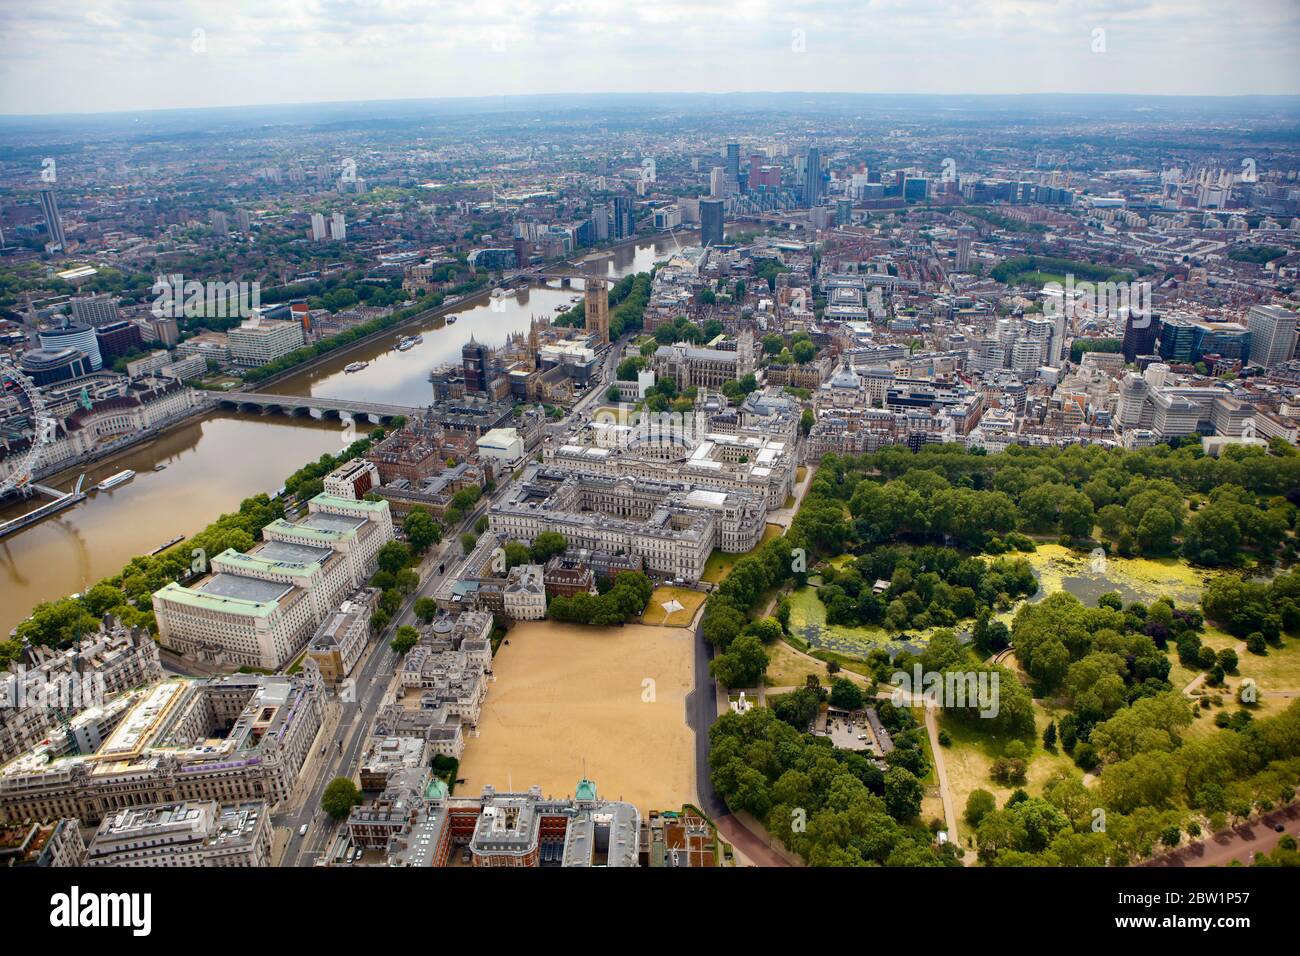 Vista aérea del desfile de los guardias del caballo, el parque y el Parlamento de St JaME, Londres, Reino Unido Foto de stock